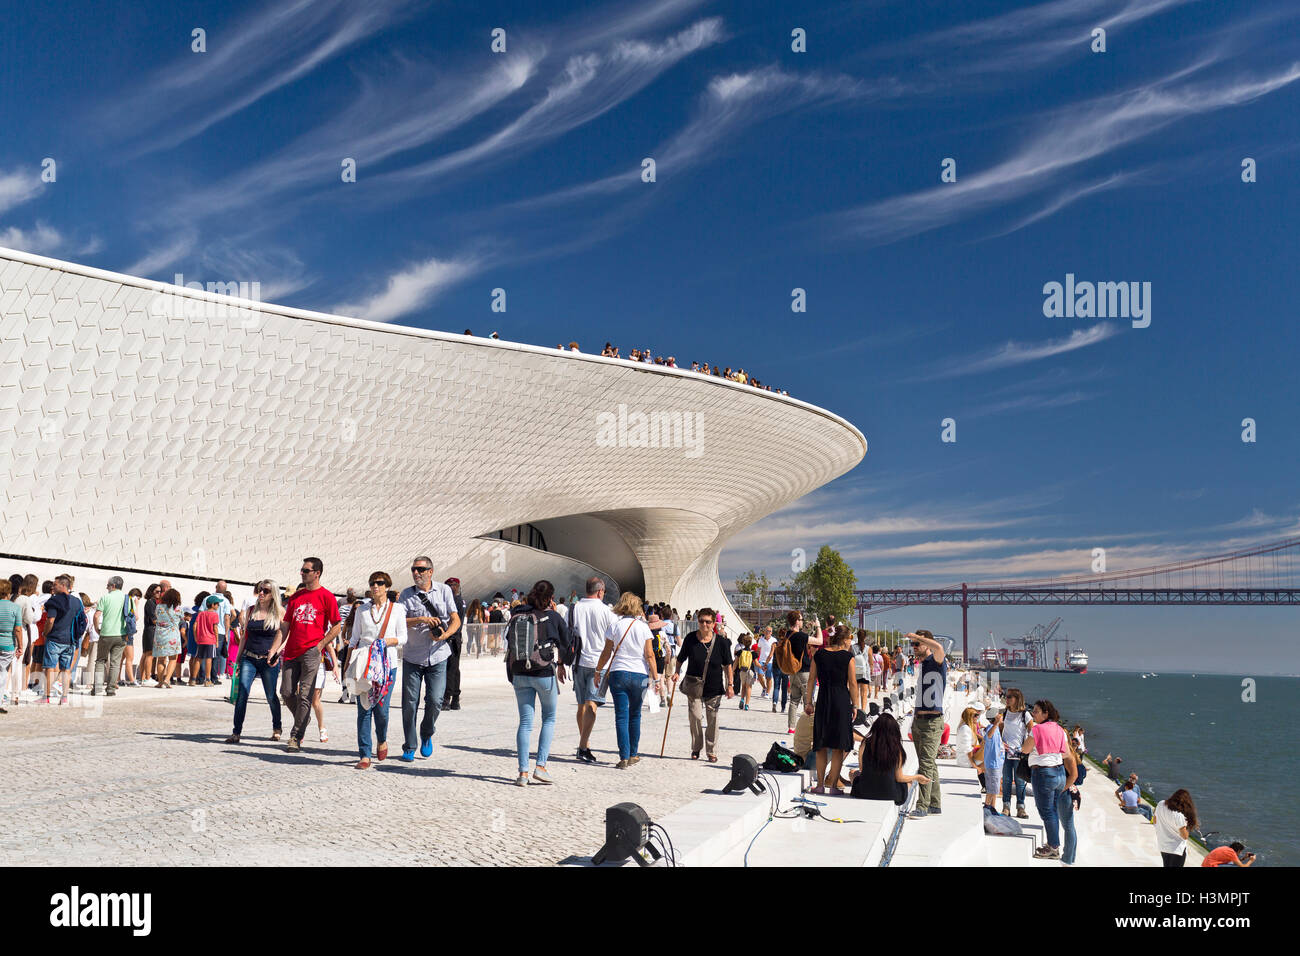 Foule à l'ouverture du monde plus nouveau musée, la MAAT (Musée d'Art, Architecture et Technologie) à Lisbonne, Portugal Banque D'Images